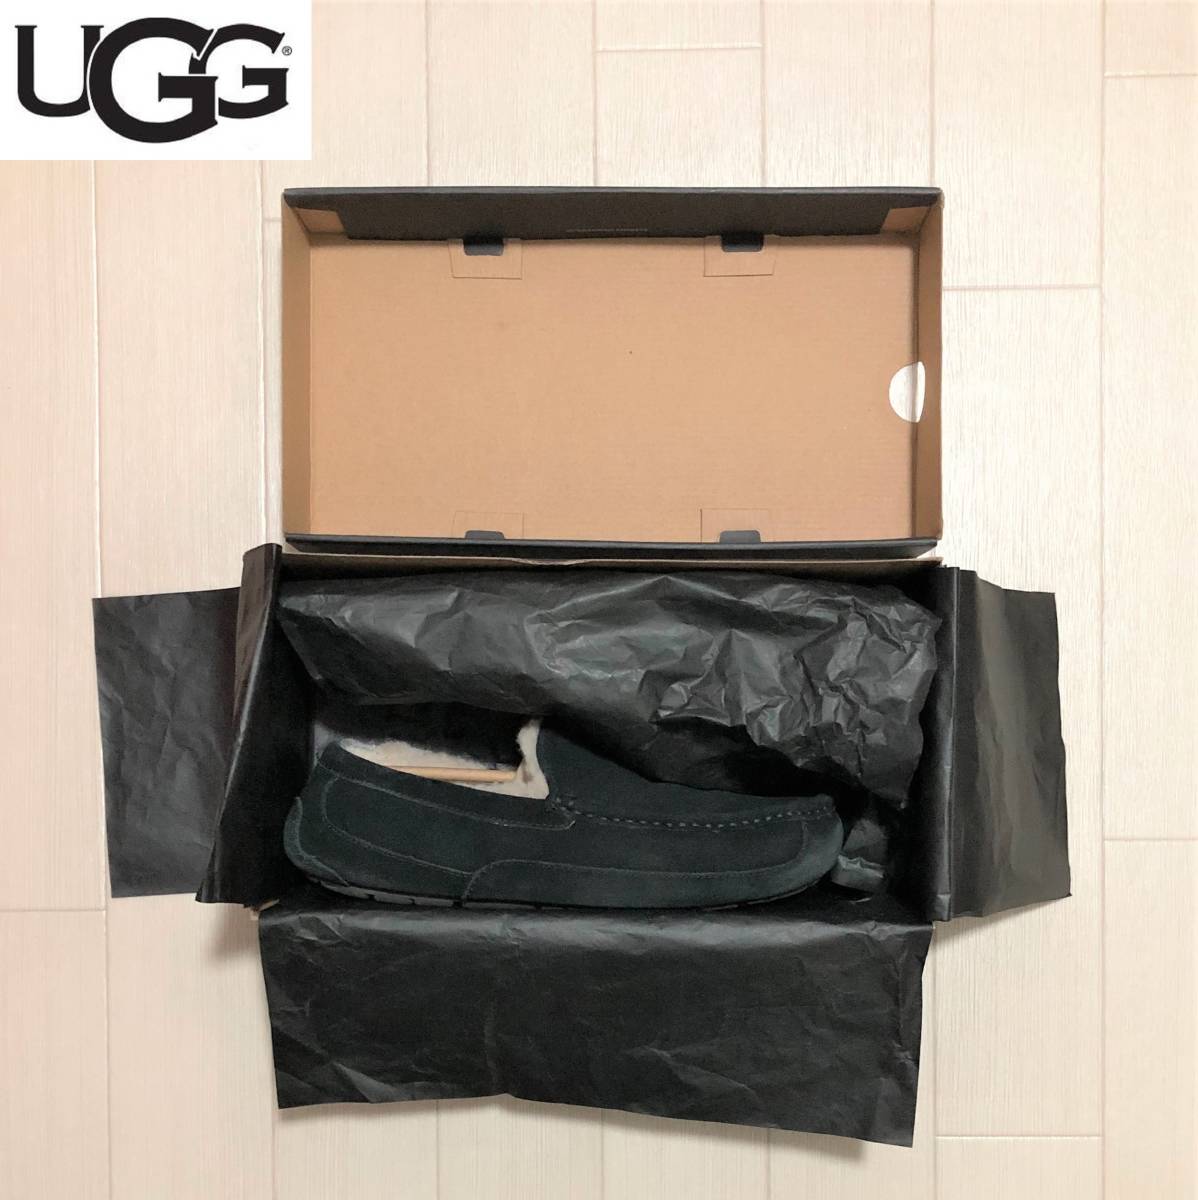 UGG アグ M ASCOT メンズ アスコット モカシン 26.0cm BLK BLACK ブラック 箱付き